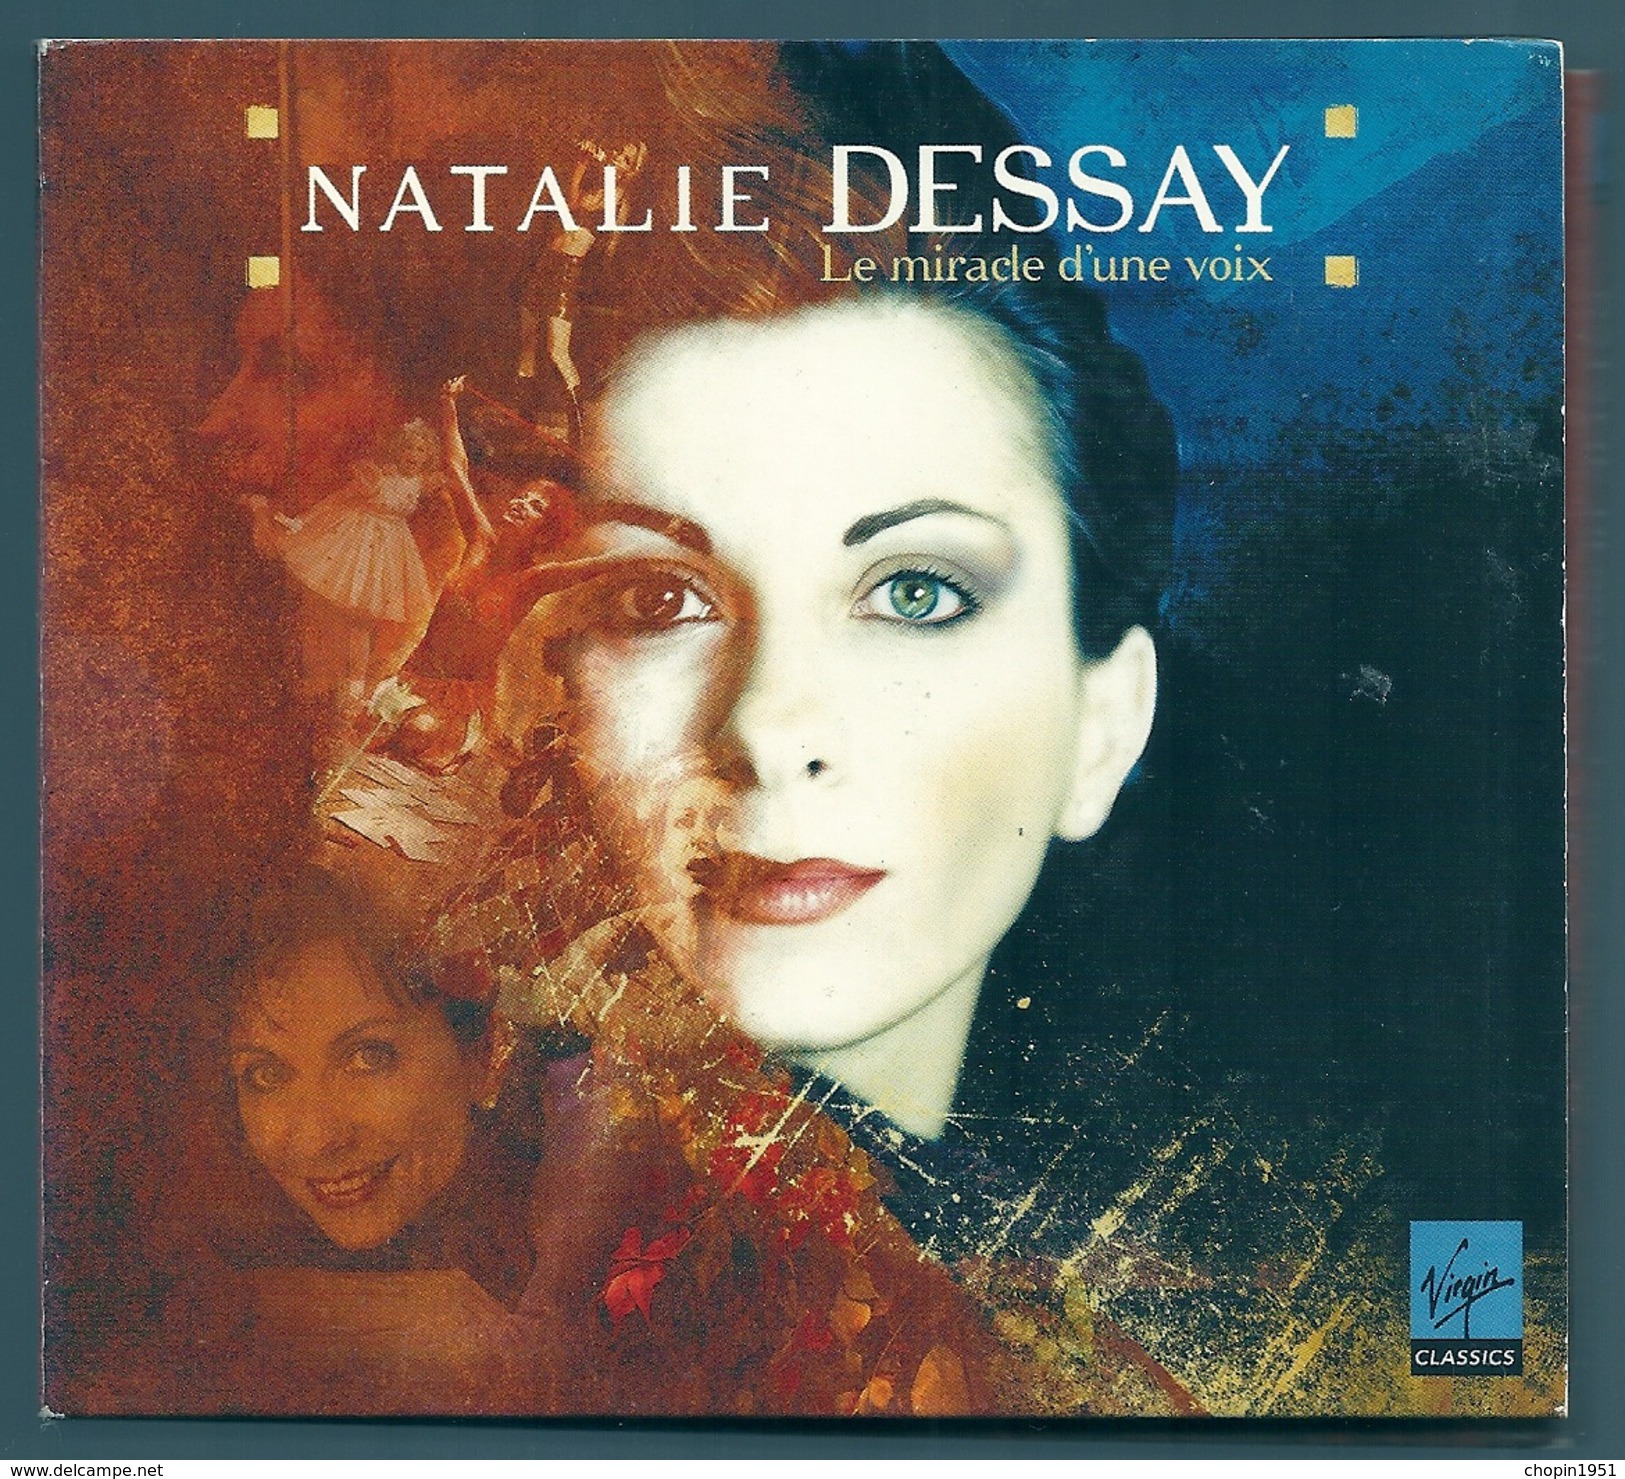 CD CLASSIQUE (2 CD) - NATALIE DESSAY : LE MIRACLE D'UNE VOIX - Klassik